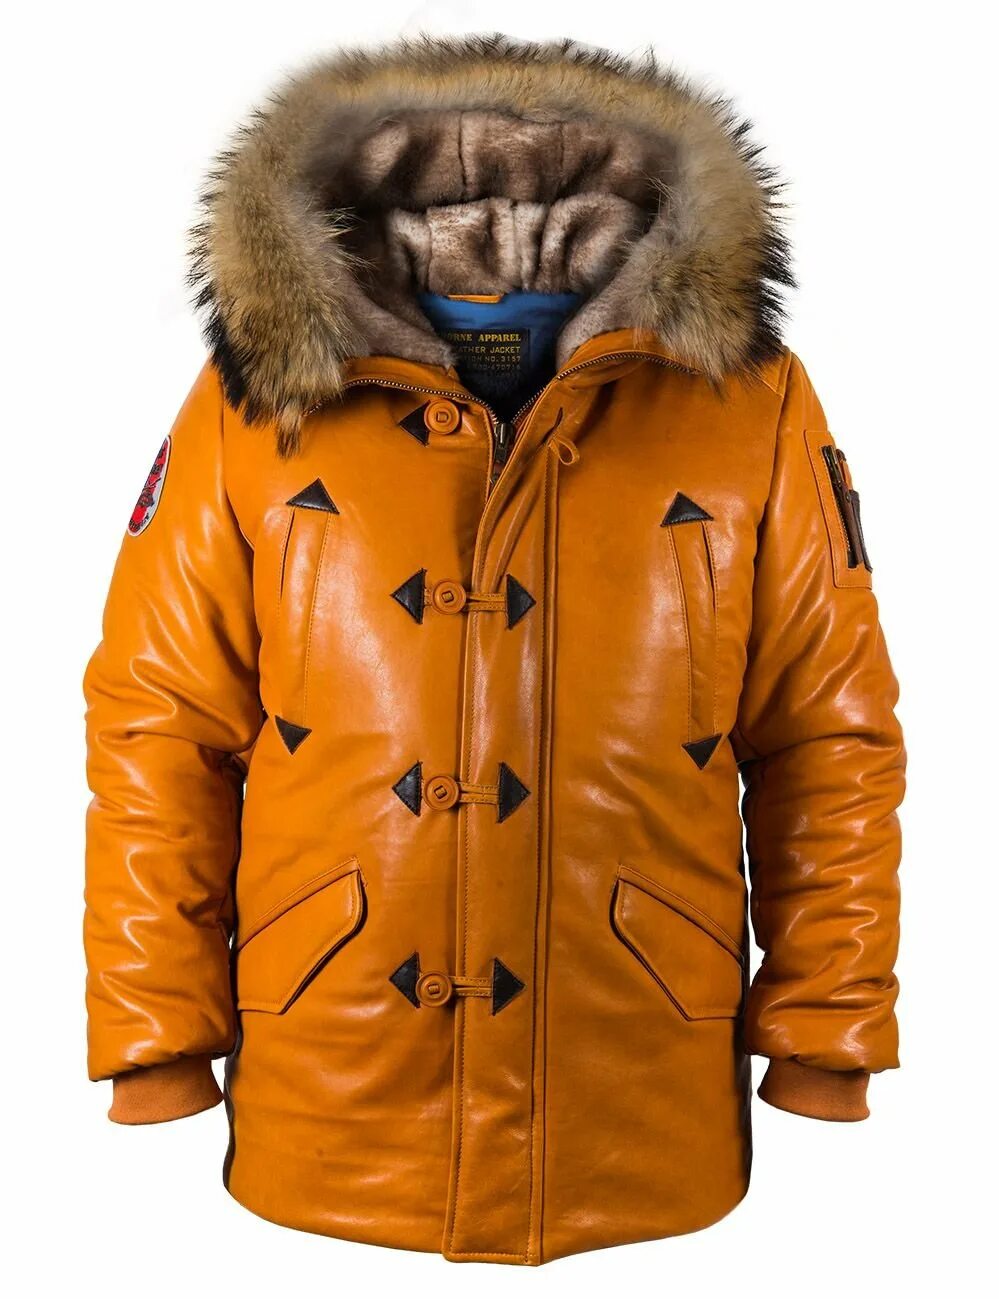 Теплая аляска. Куртка Аляска North Pole. Куртка Аляска ВМФ. Куртка Аляска Альпина. Кожаная Аляска мужская.